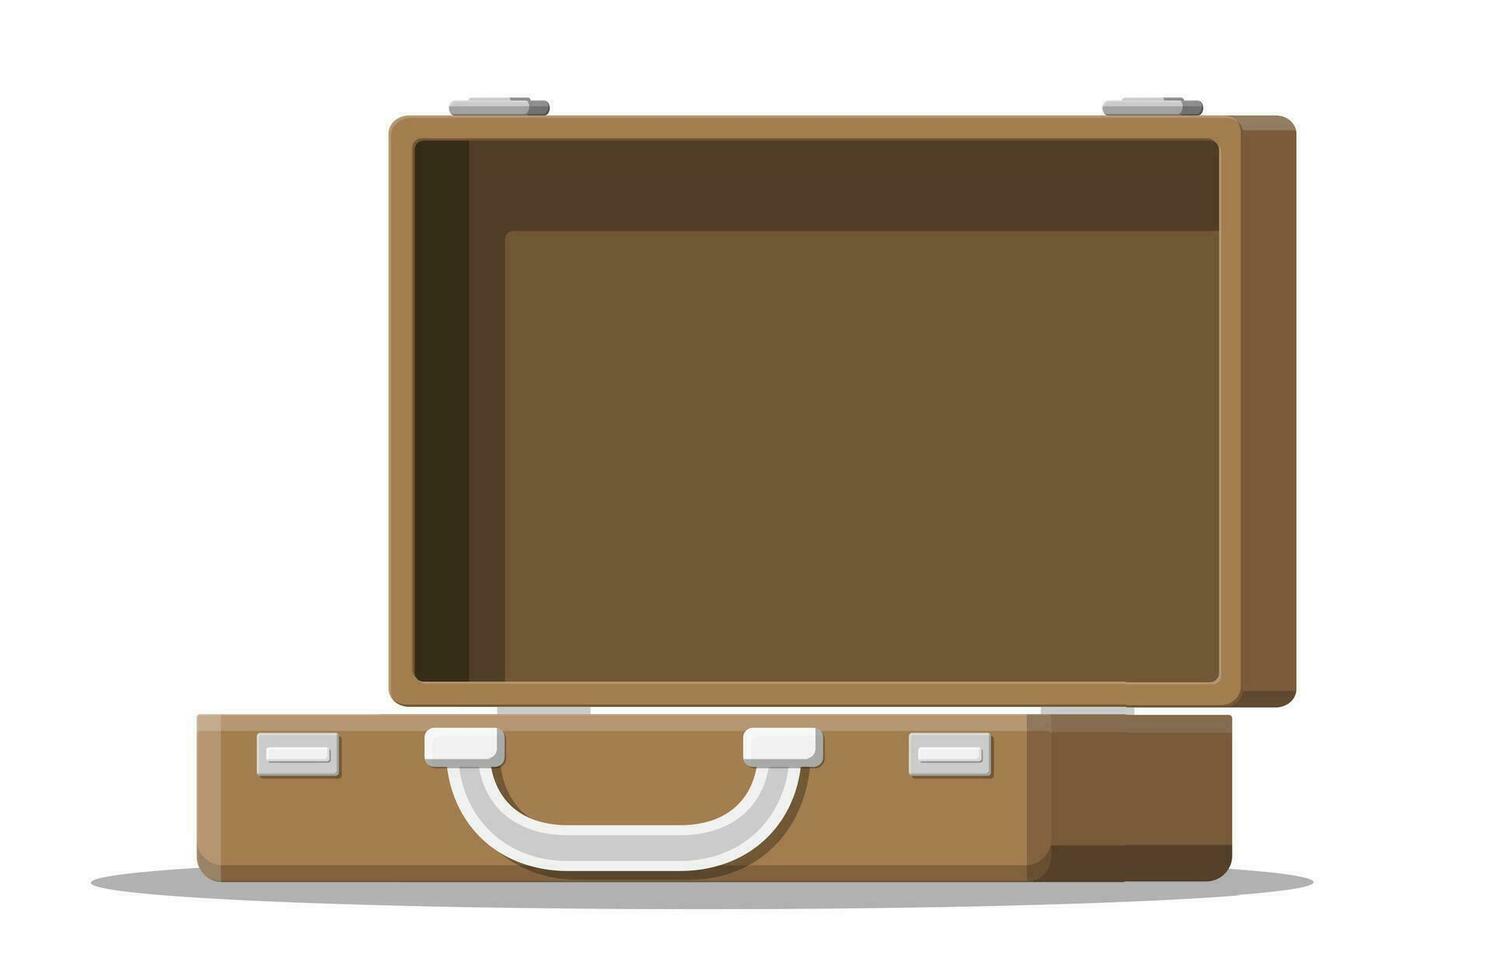 öppen årgång resväska för resa. retro fall för bagage. tömma väska, låda, behållare för varor. vektor illustration i platt stil